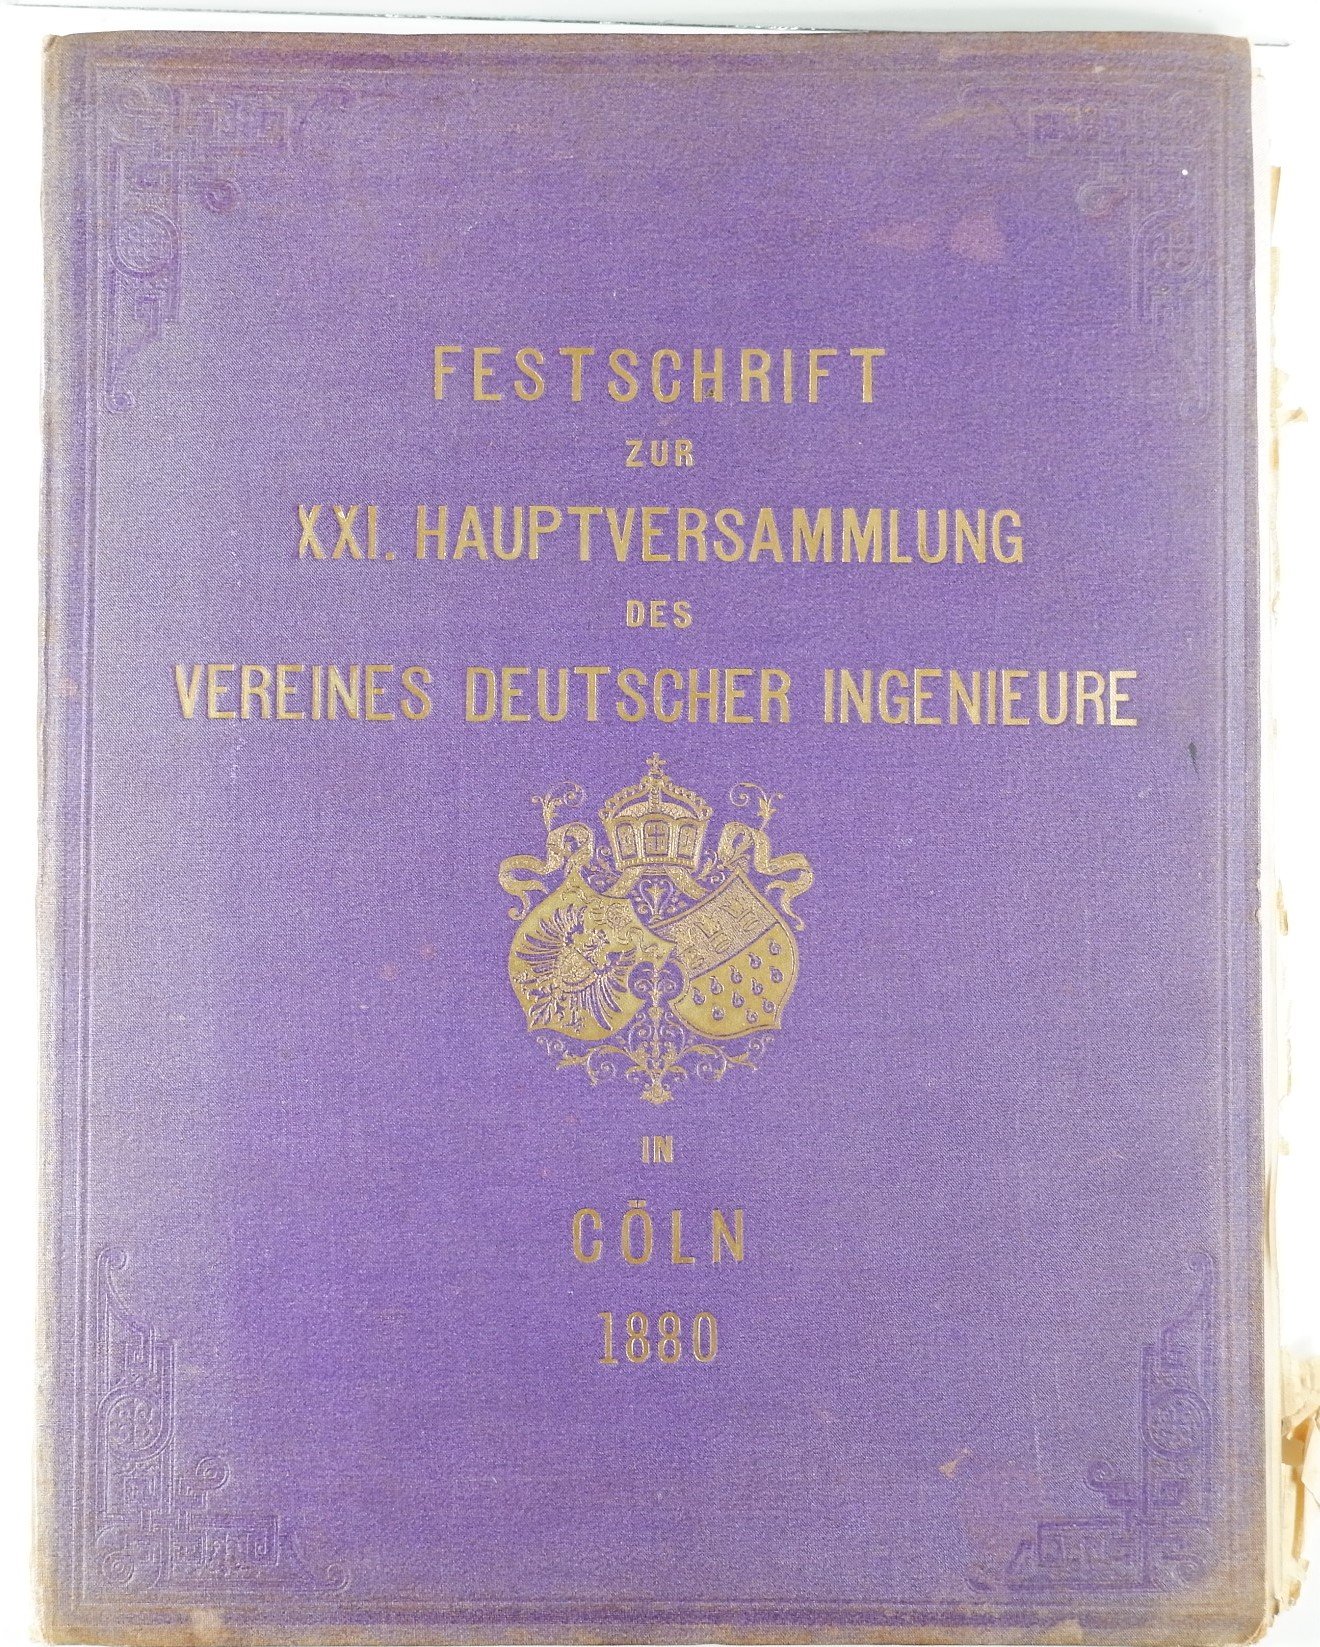 Festschrift zur 21.Hauptversammlung des Vereins Deutscher Ingenieure in Köln (1880) (Volkskunde- und Freilichtmuseum Roscheider Hof CC0)